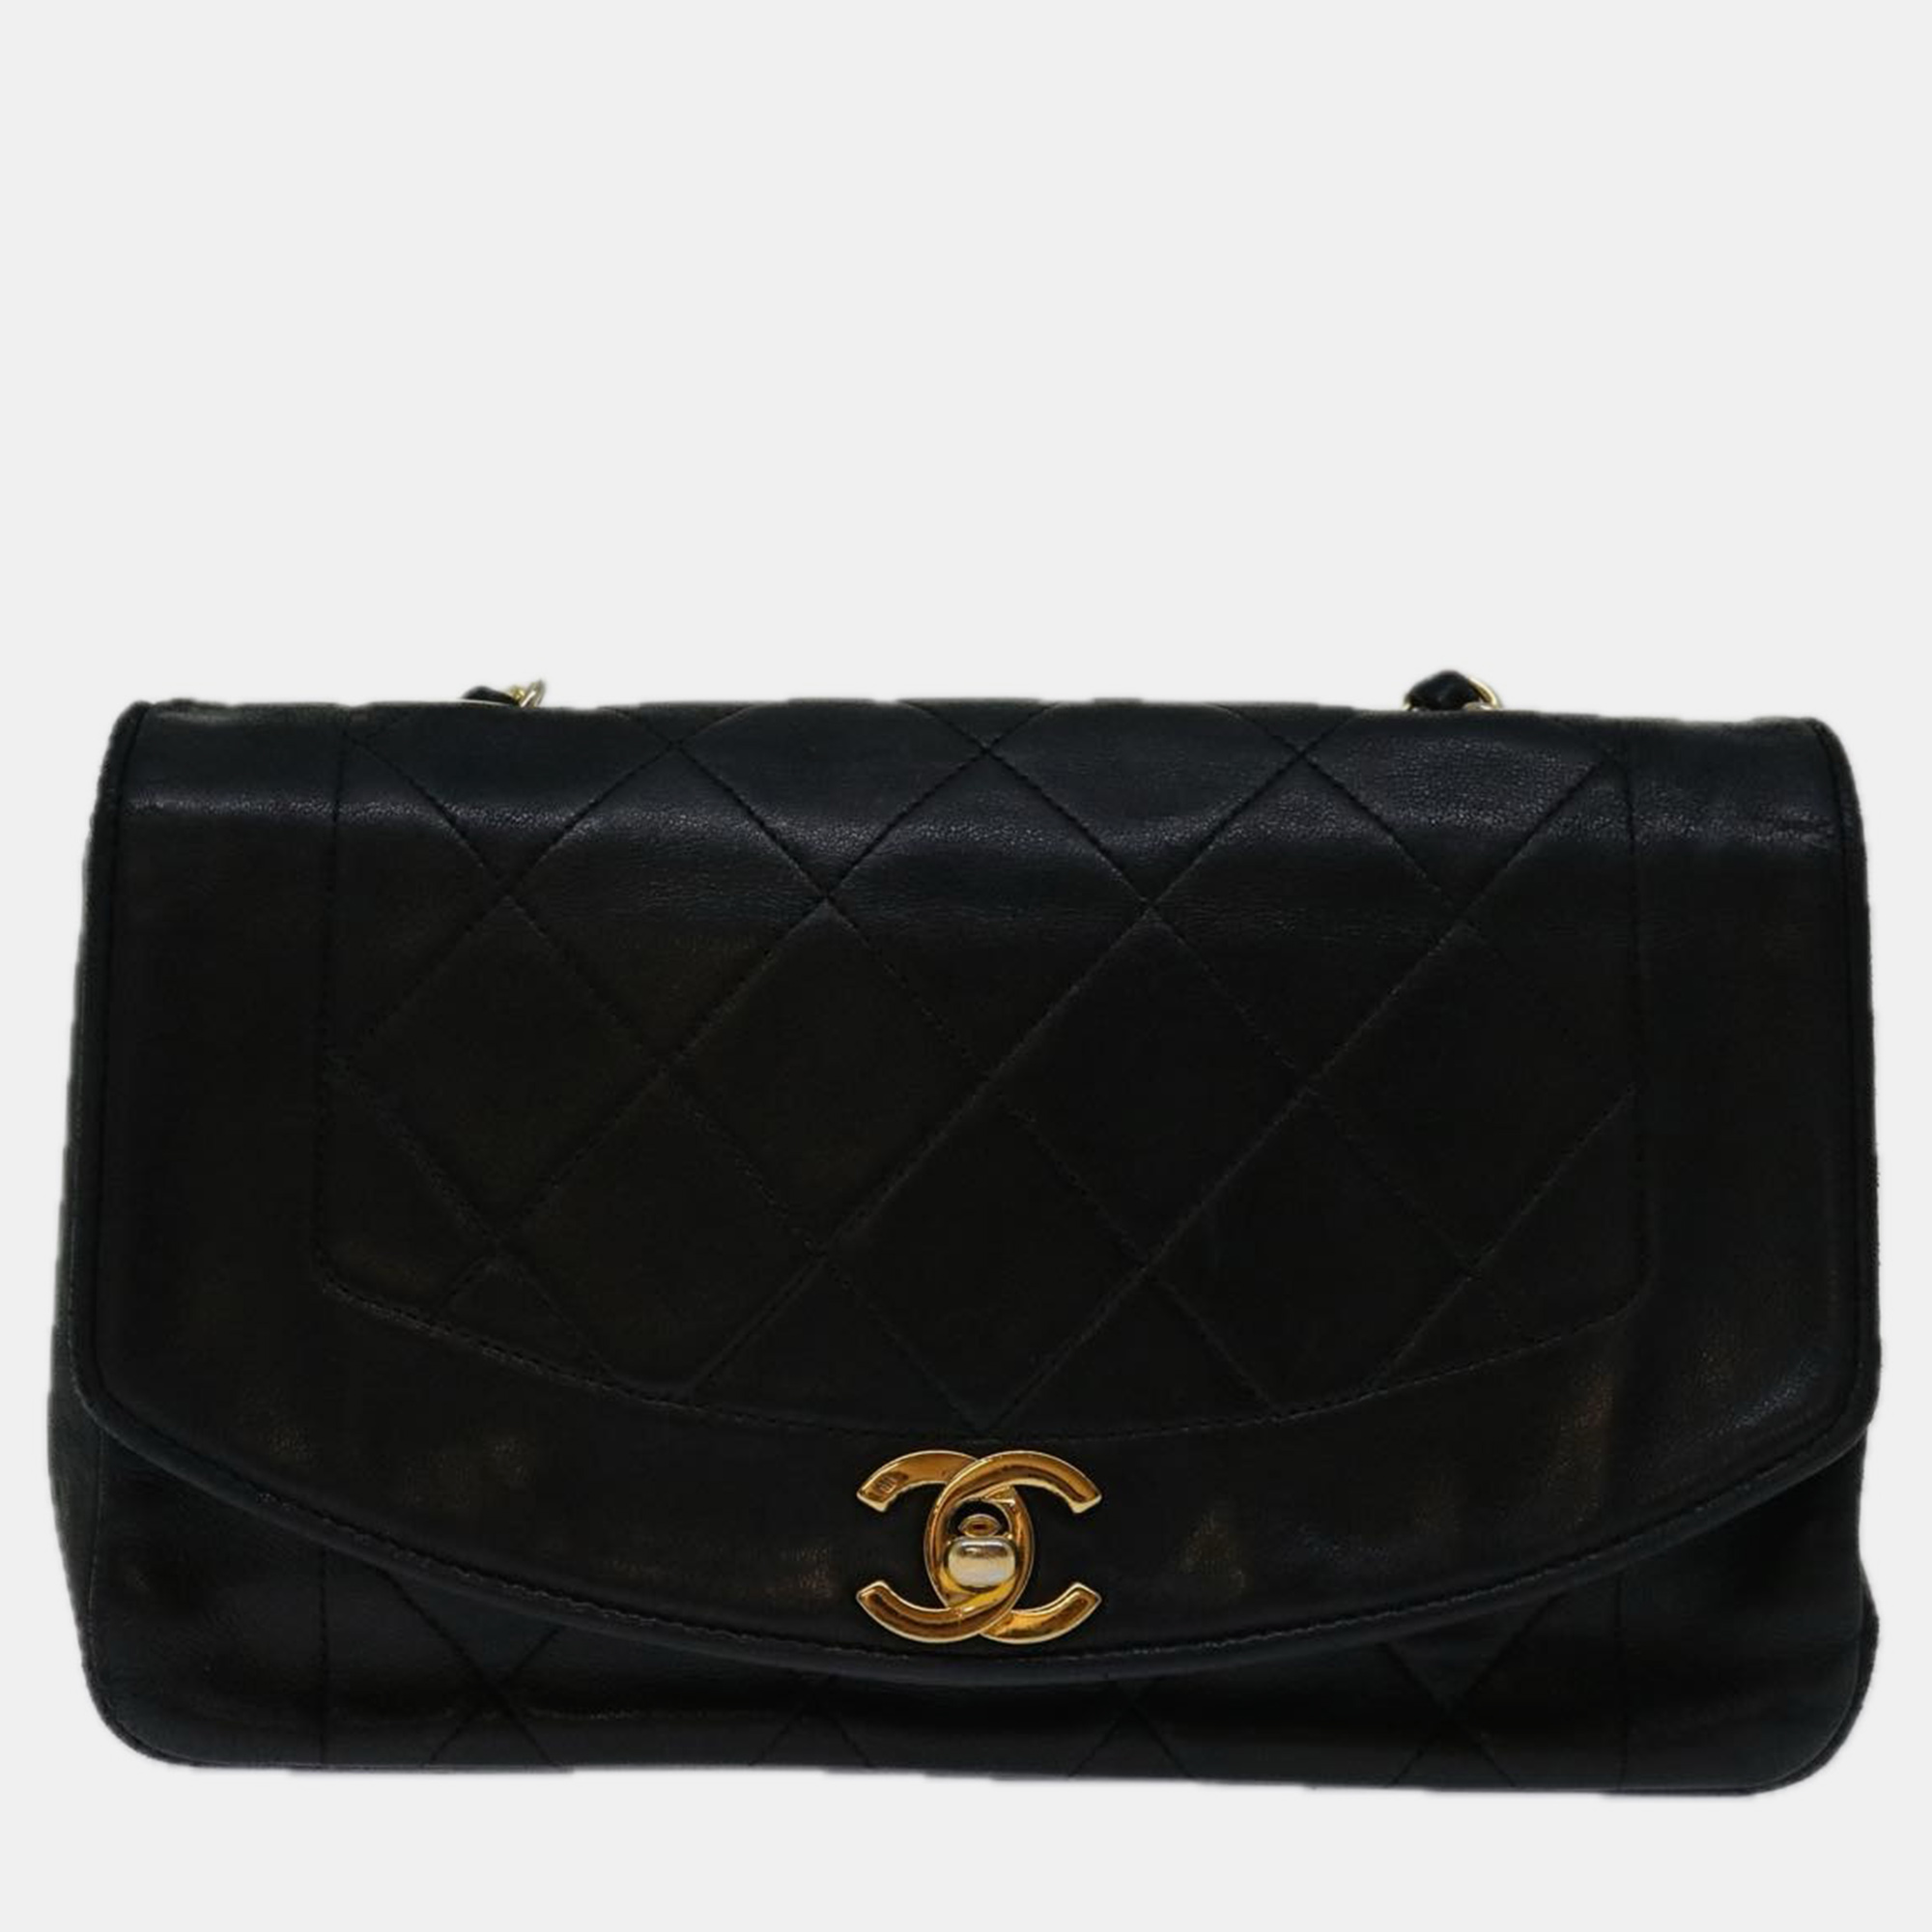 Chanel black leather diana shoulder bag